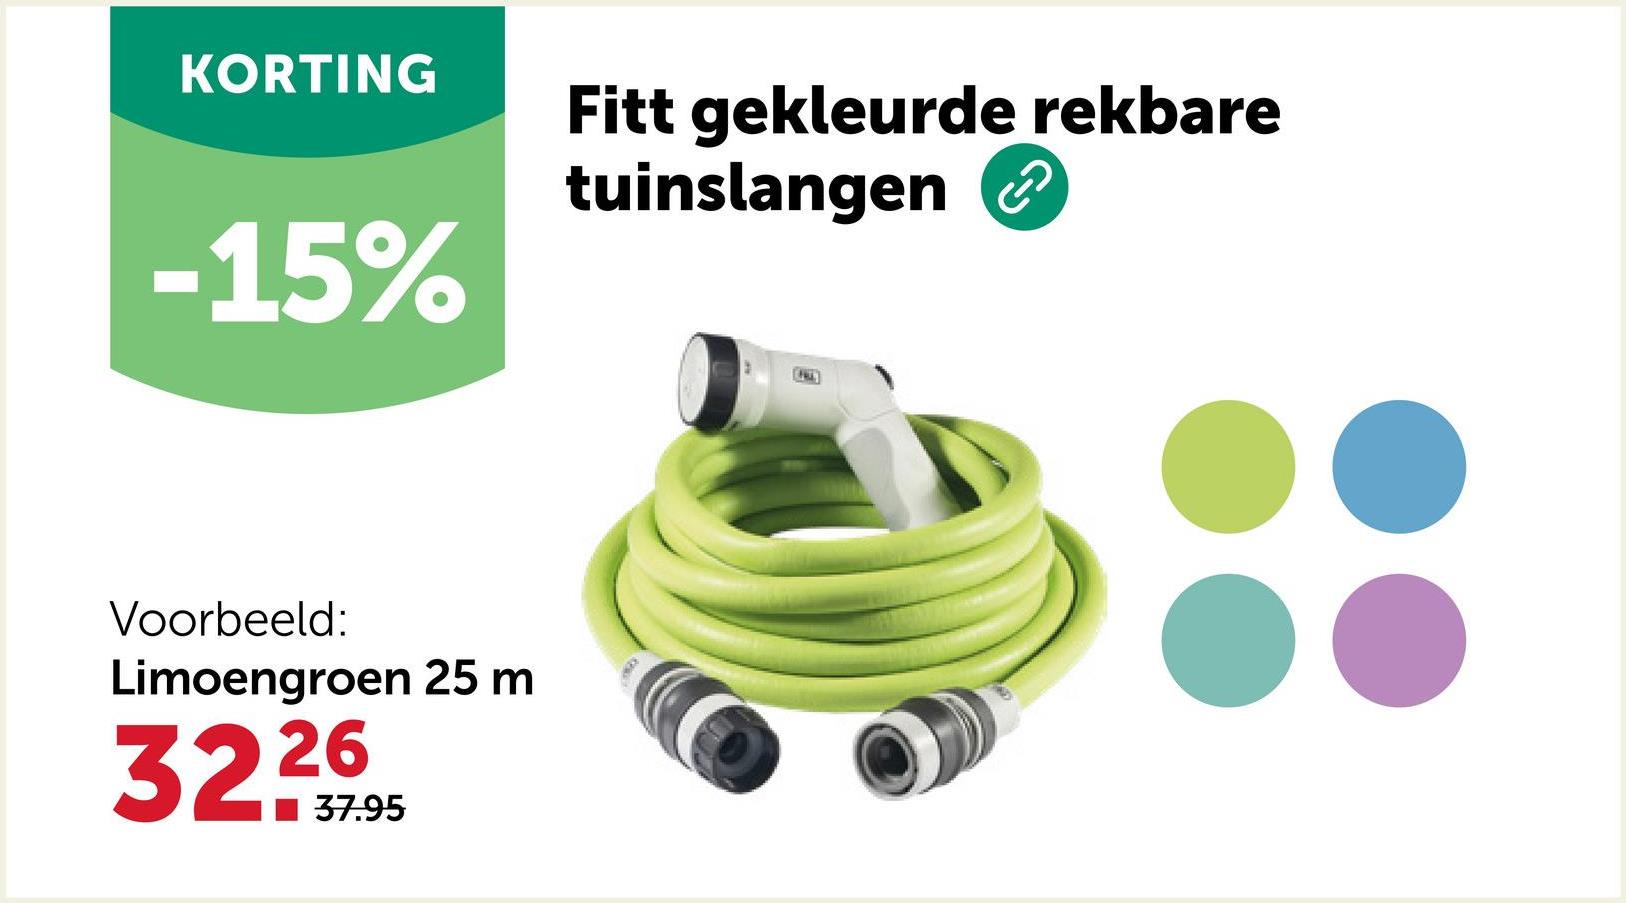 KORTING
-15%
Voorbeeld:
Limoengroen 25 m
32.26
37.95
Fitt gekleurde rekbare
tuinslangen ②